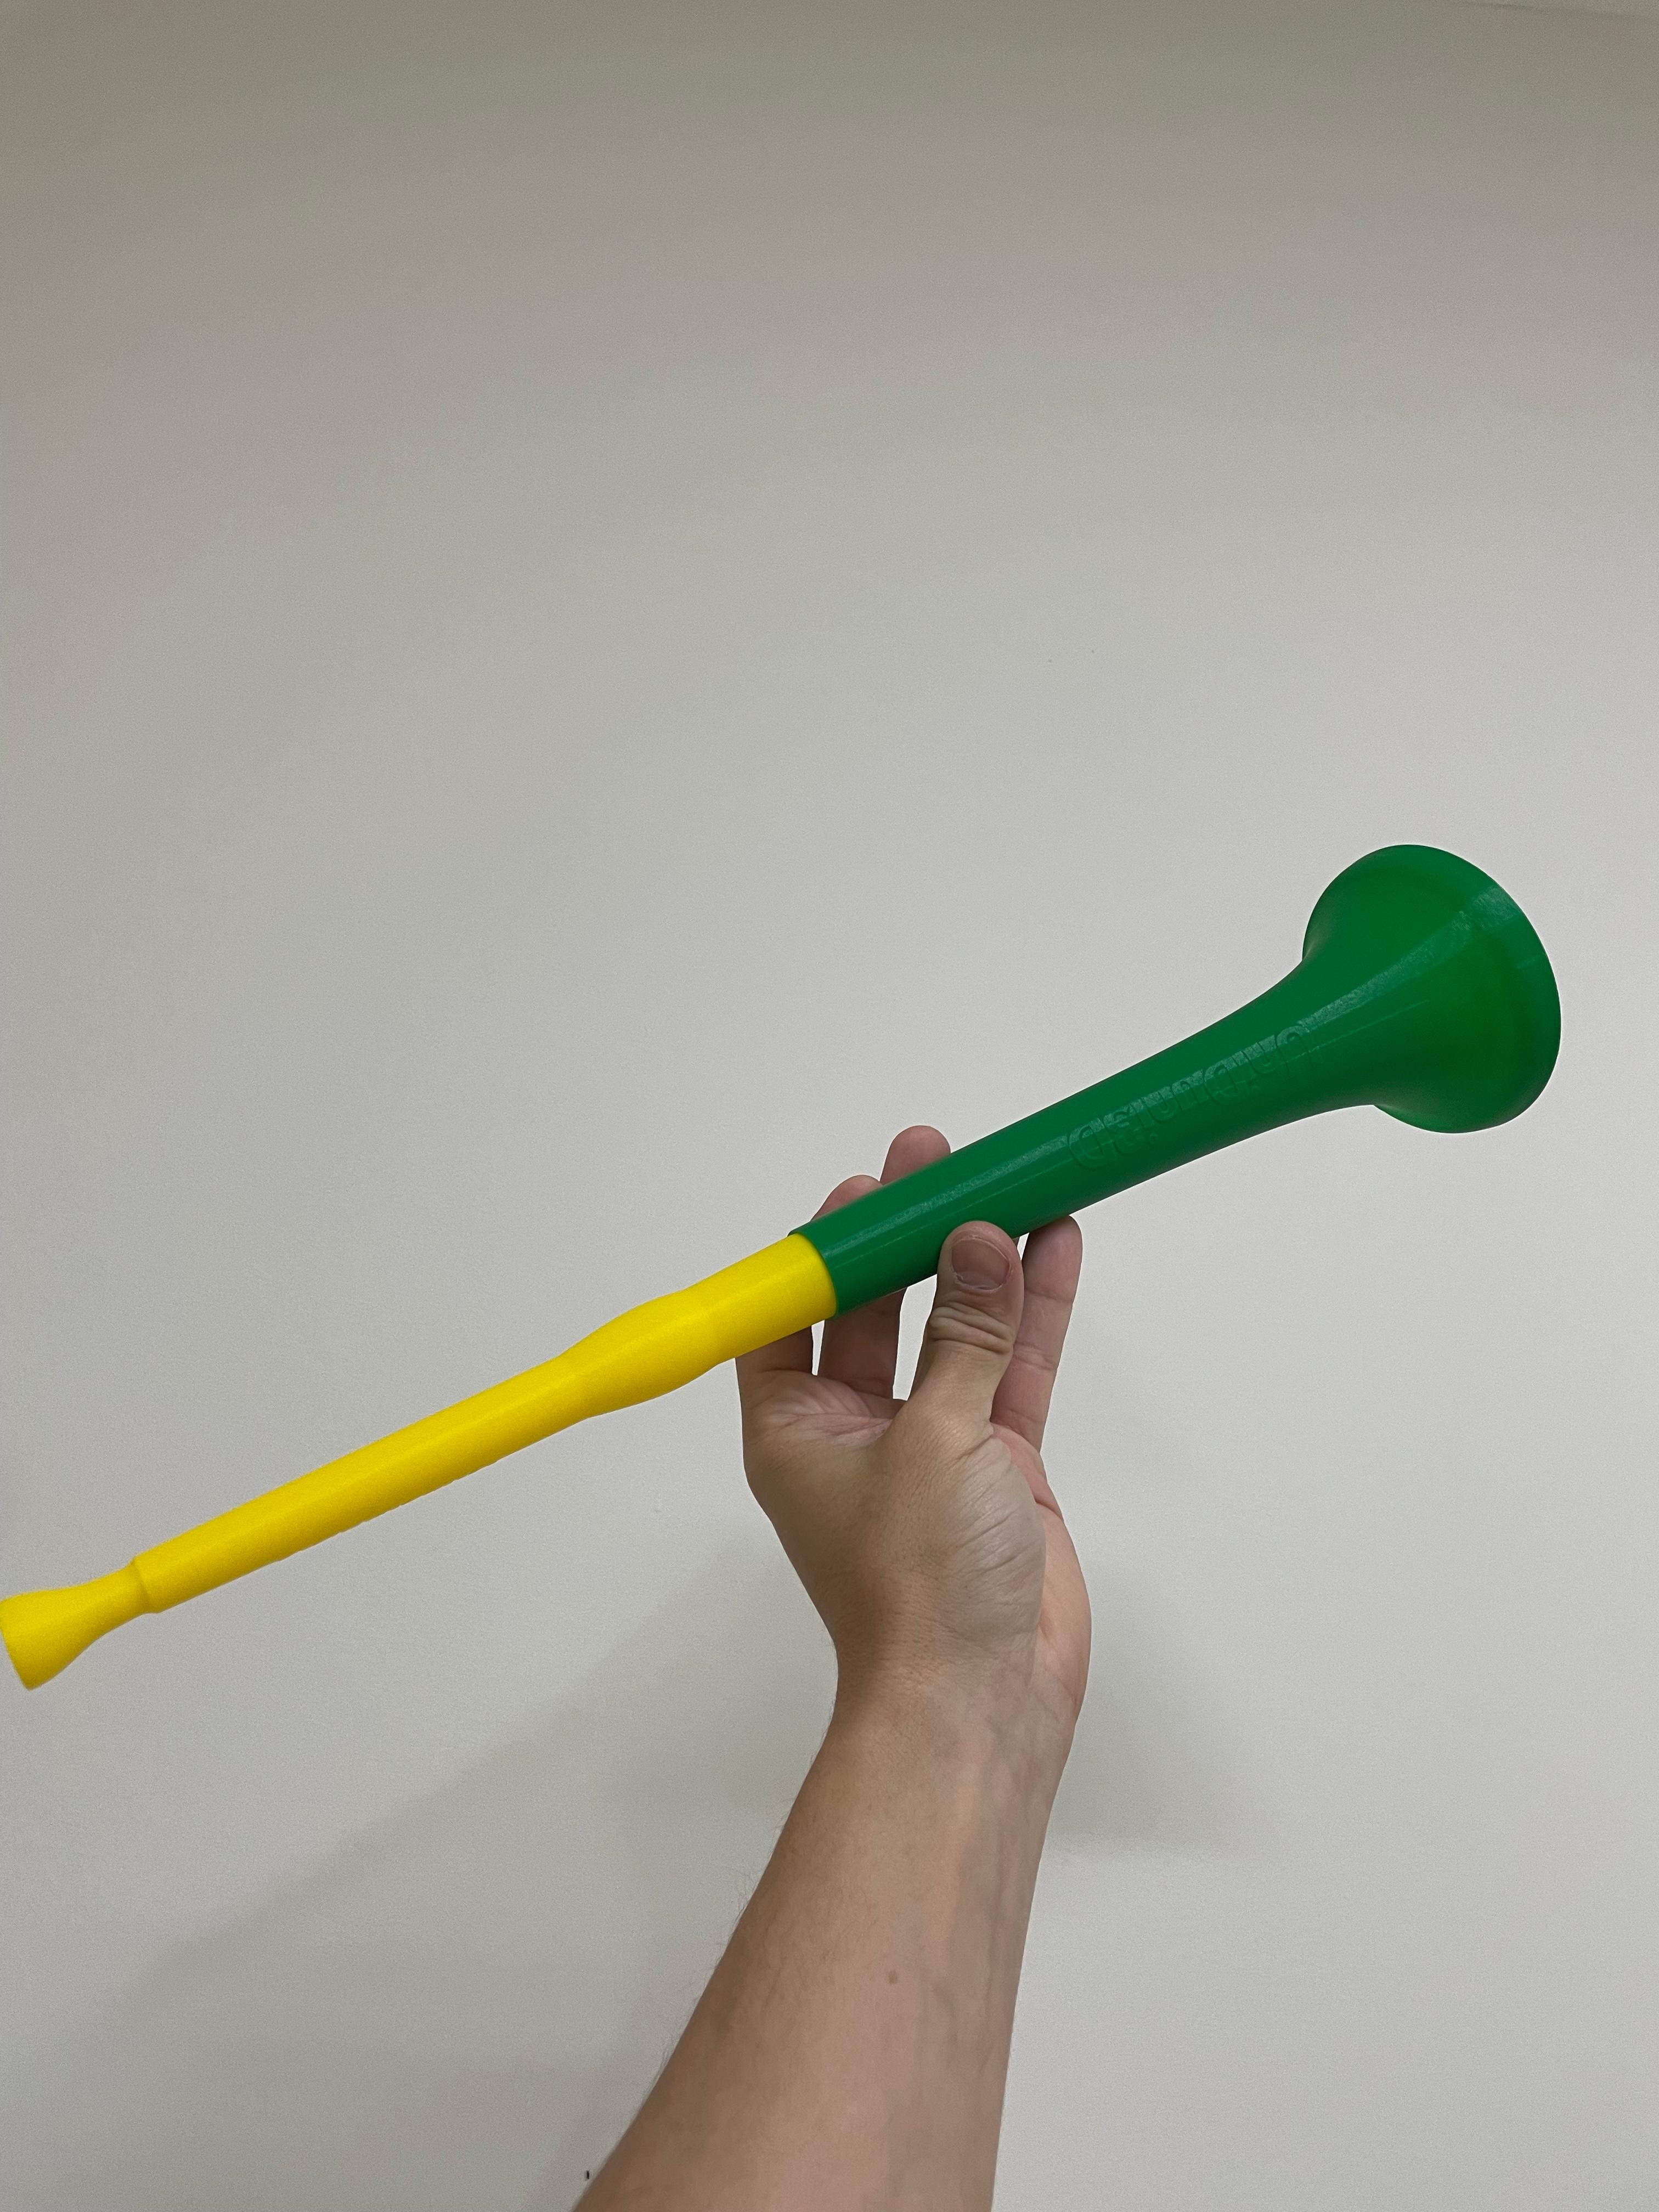 Vuvuzela "trumpet" "stadium horn" for World Cup 2022 Qatar - 2 pieces 3d model